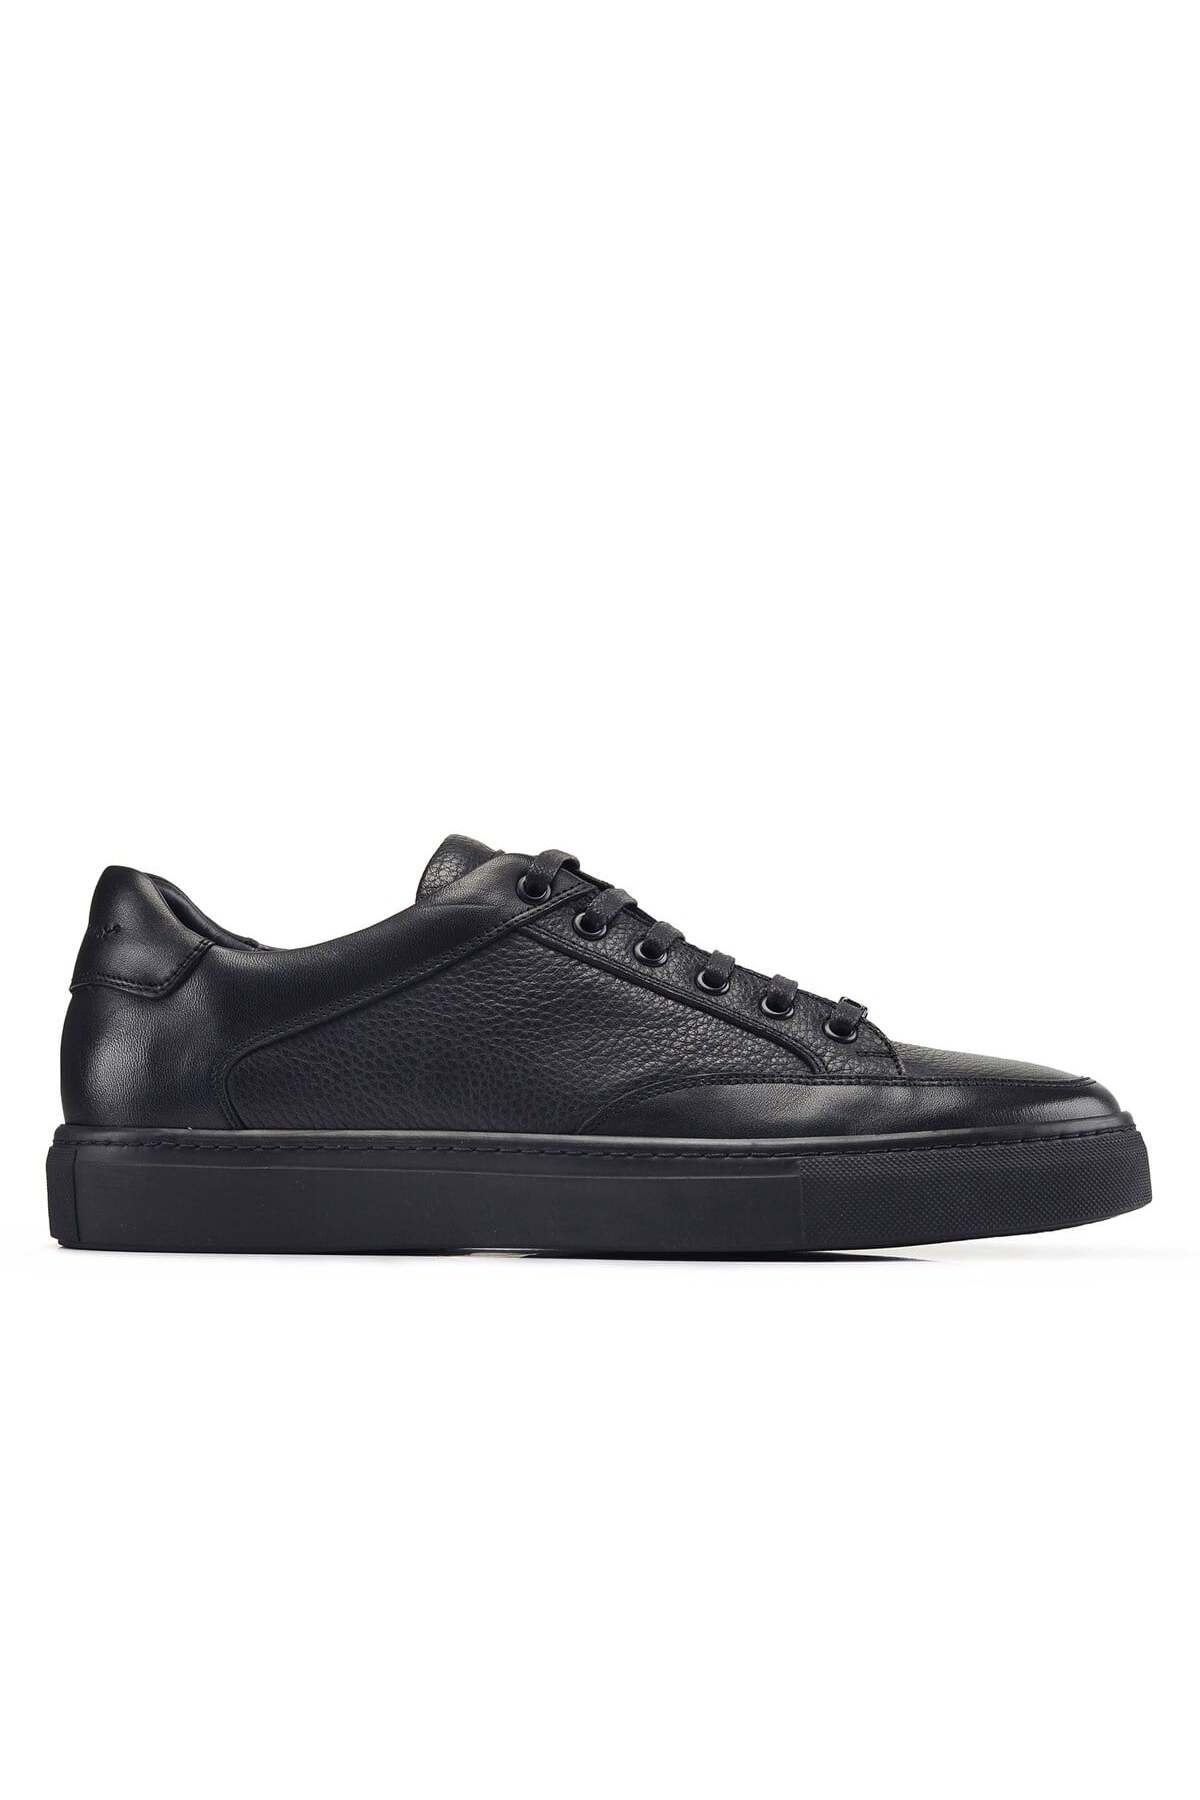 Nevzat Onay Siyah Bağcıklı Erkek Sneaker -21411-